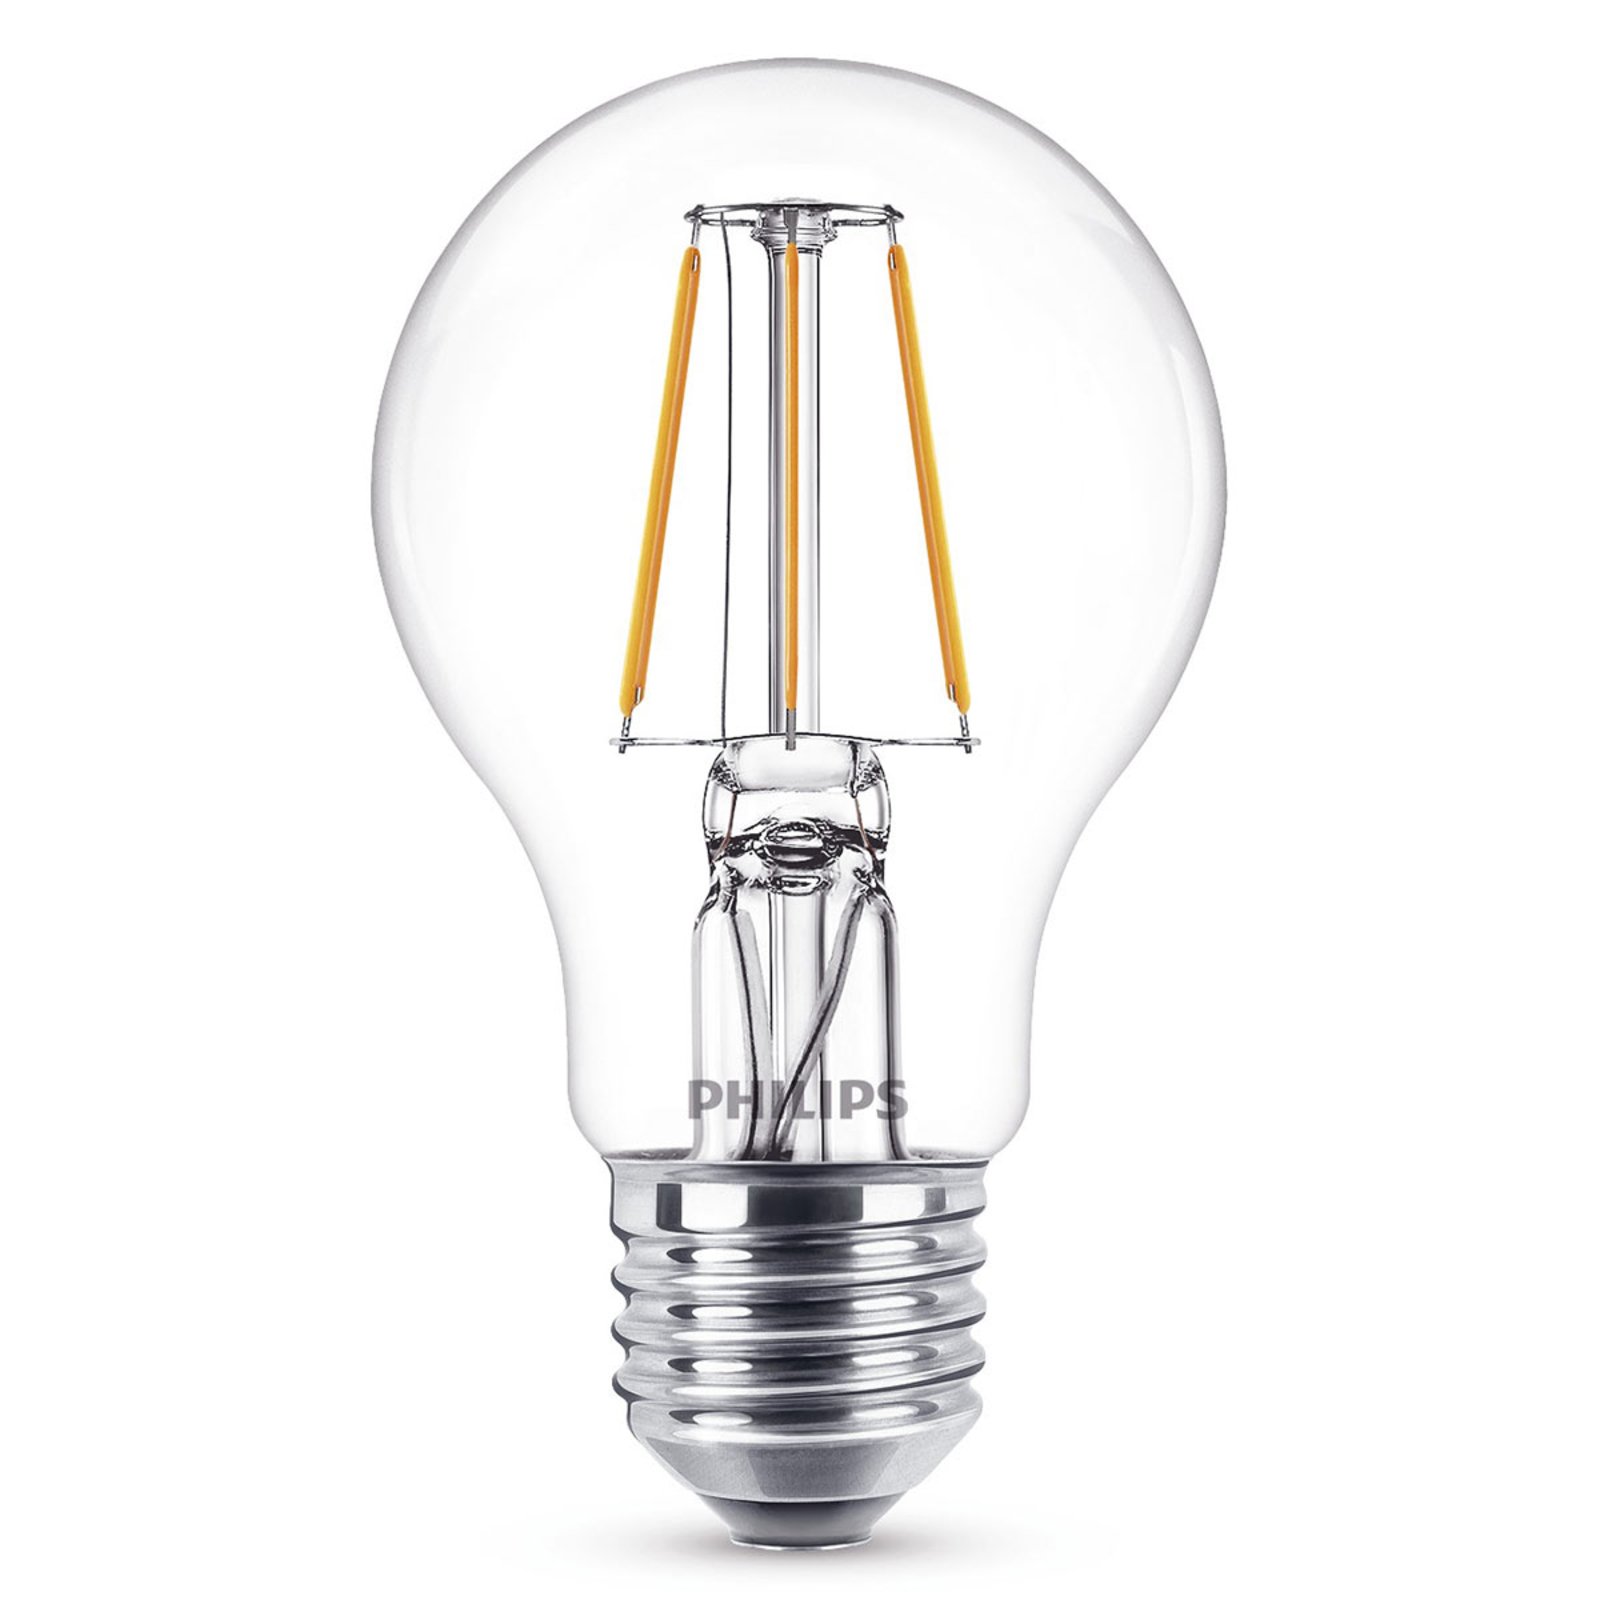 Philips E27 A60 ampoule LED filament 4 W 2 700 K